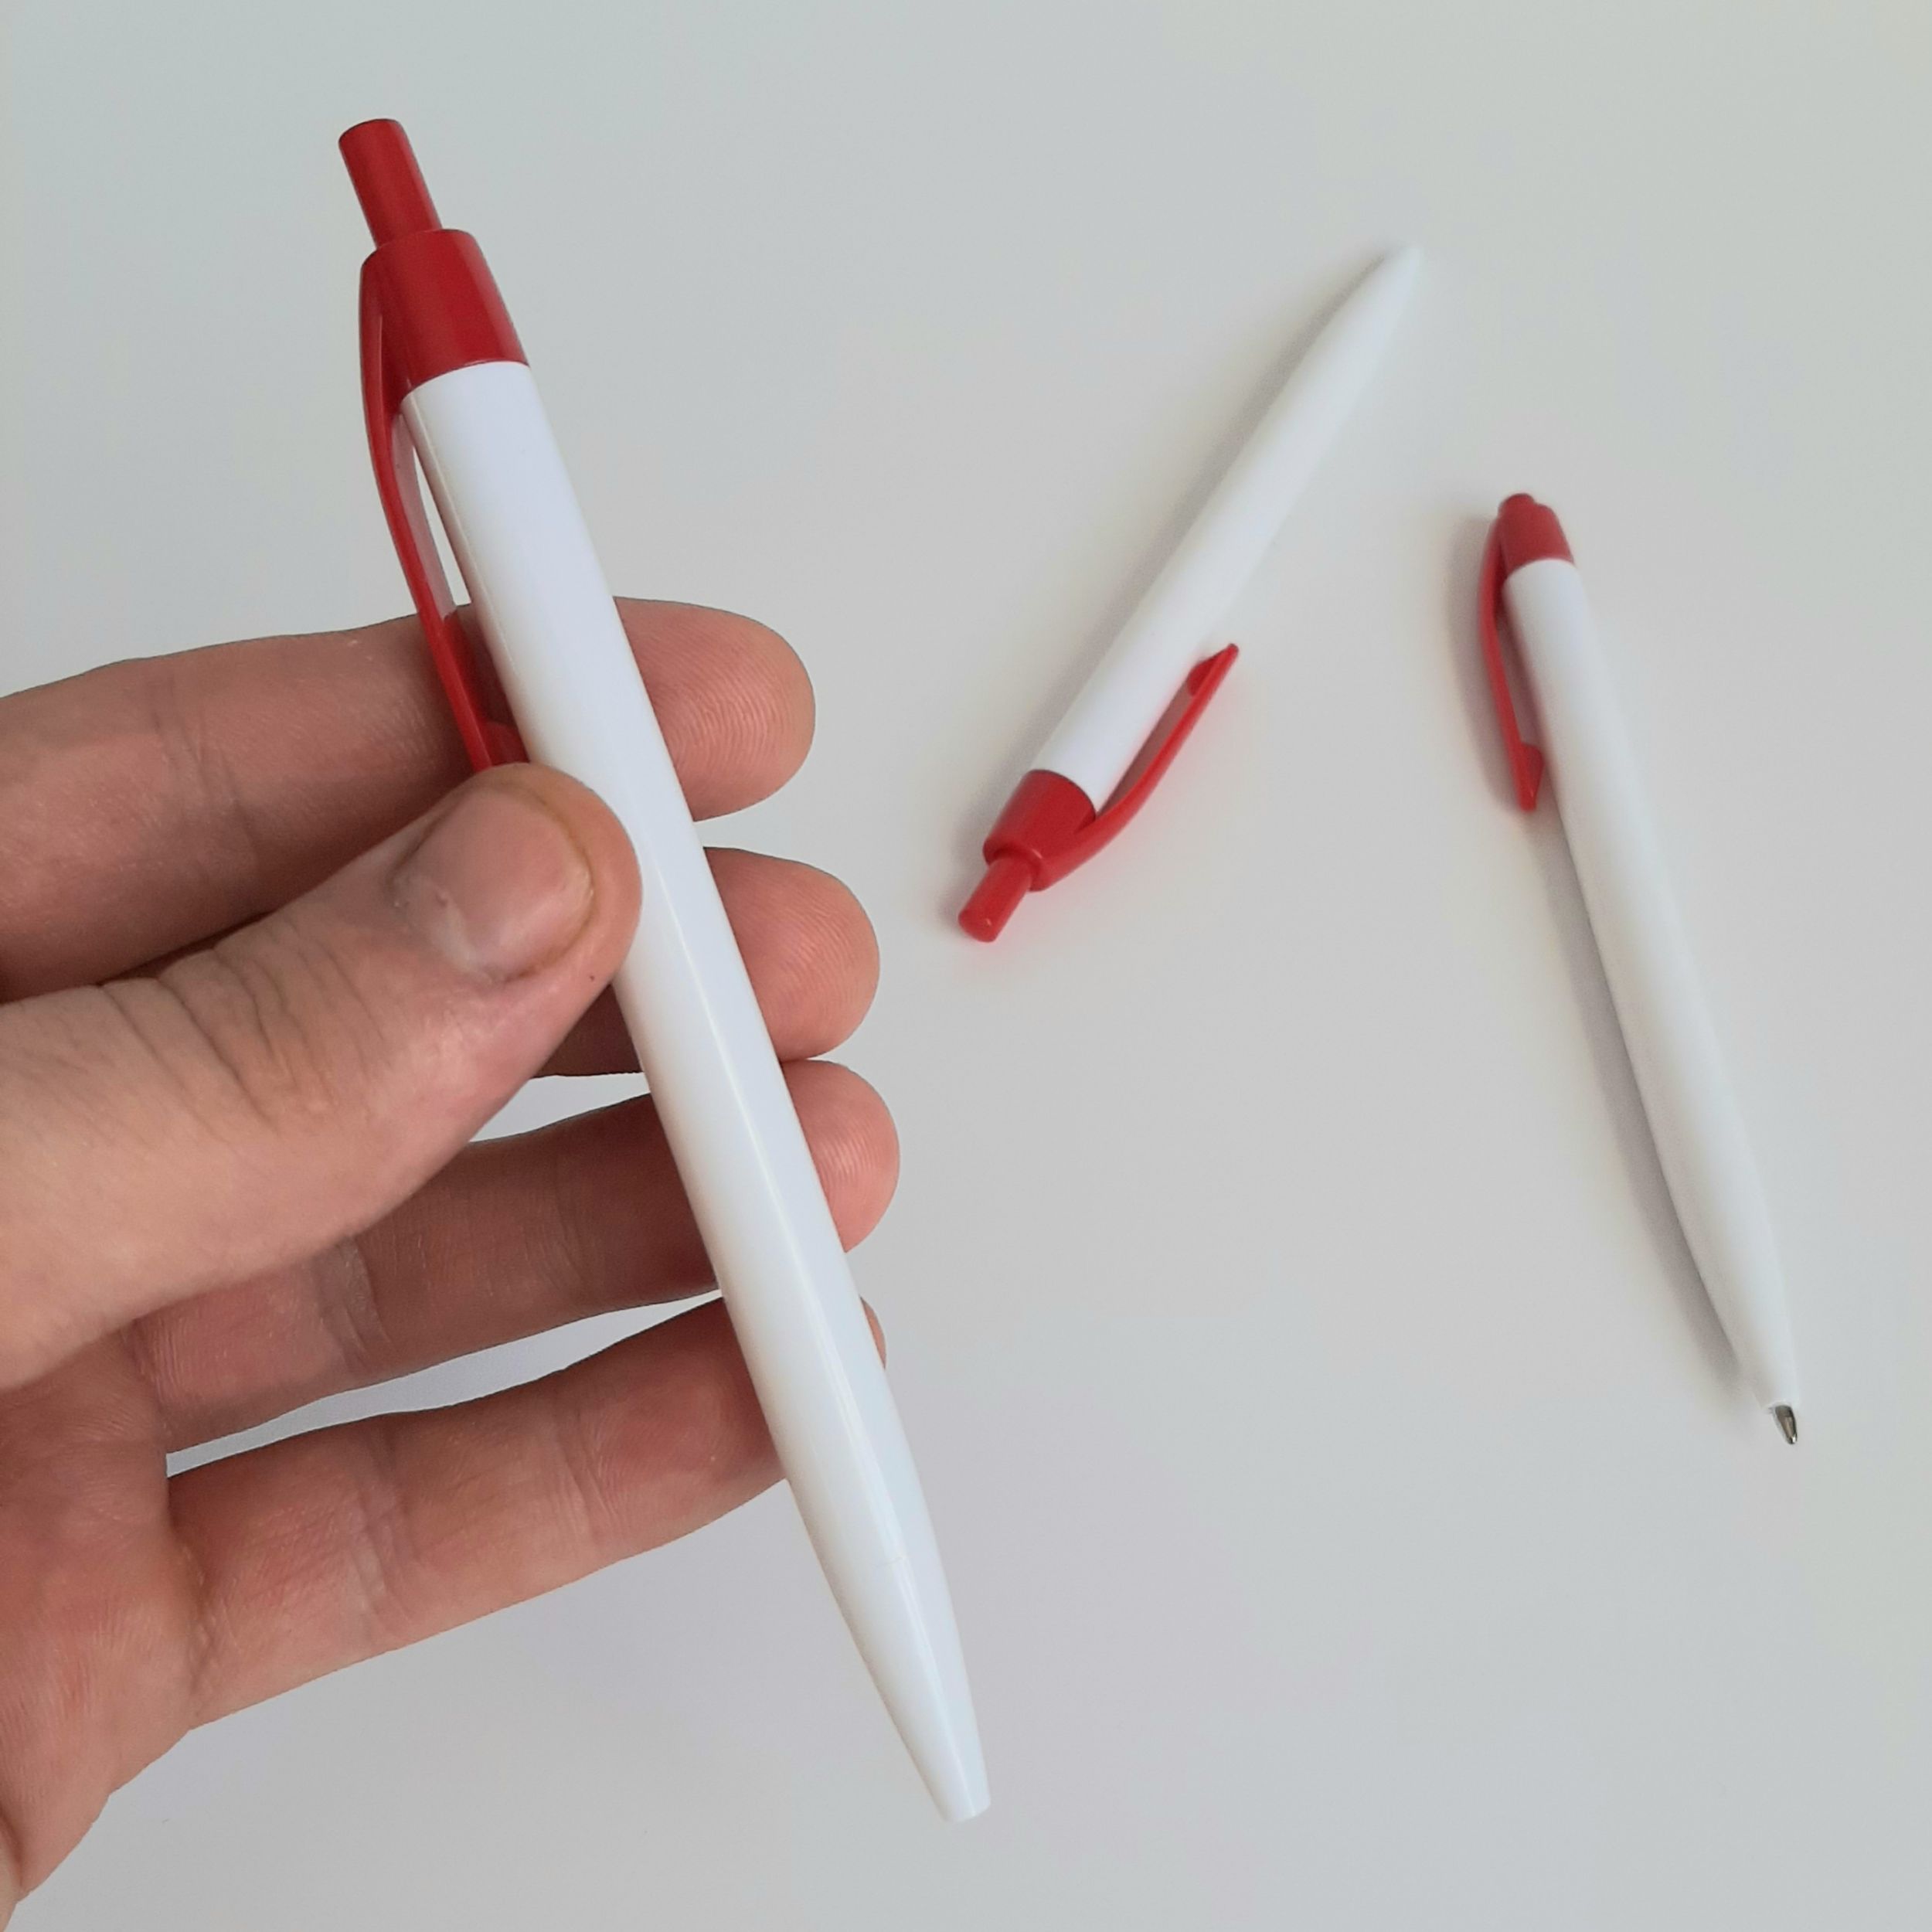 недорогие ручки с логотипом